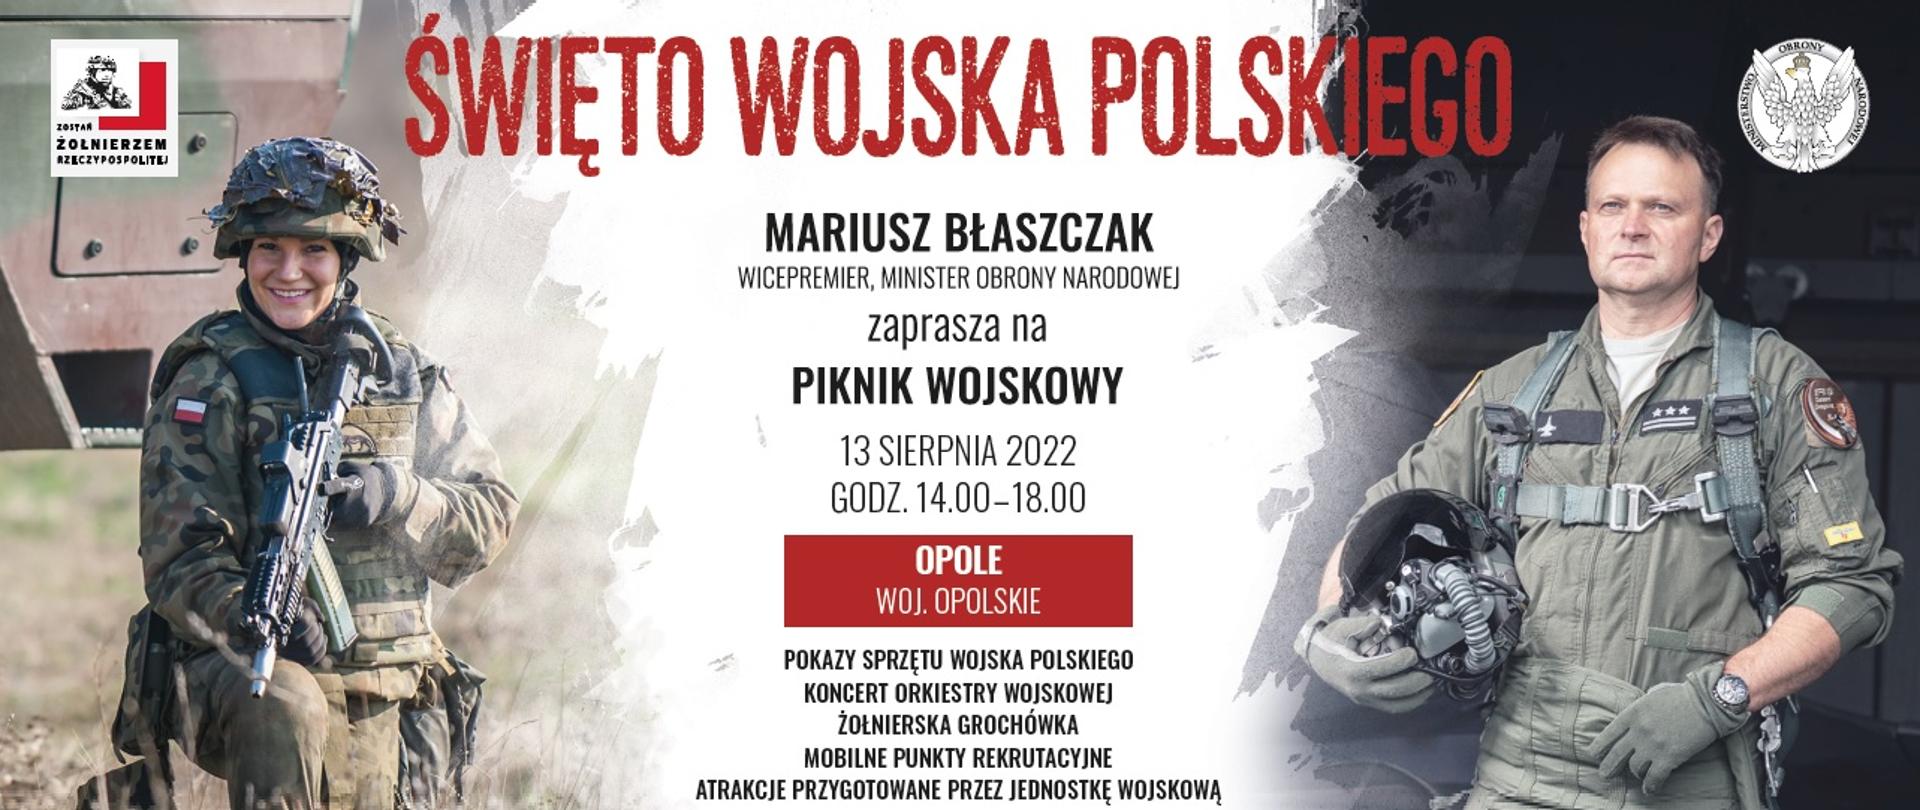 Zaproszenie na piknik wojskowy z okazji Święta Wojska Polskiego - Opole